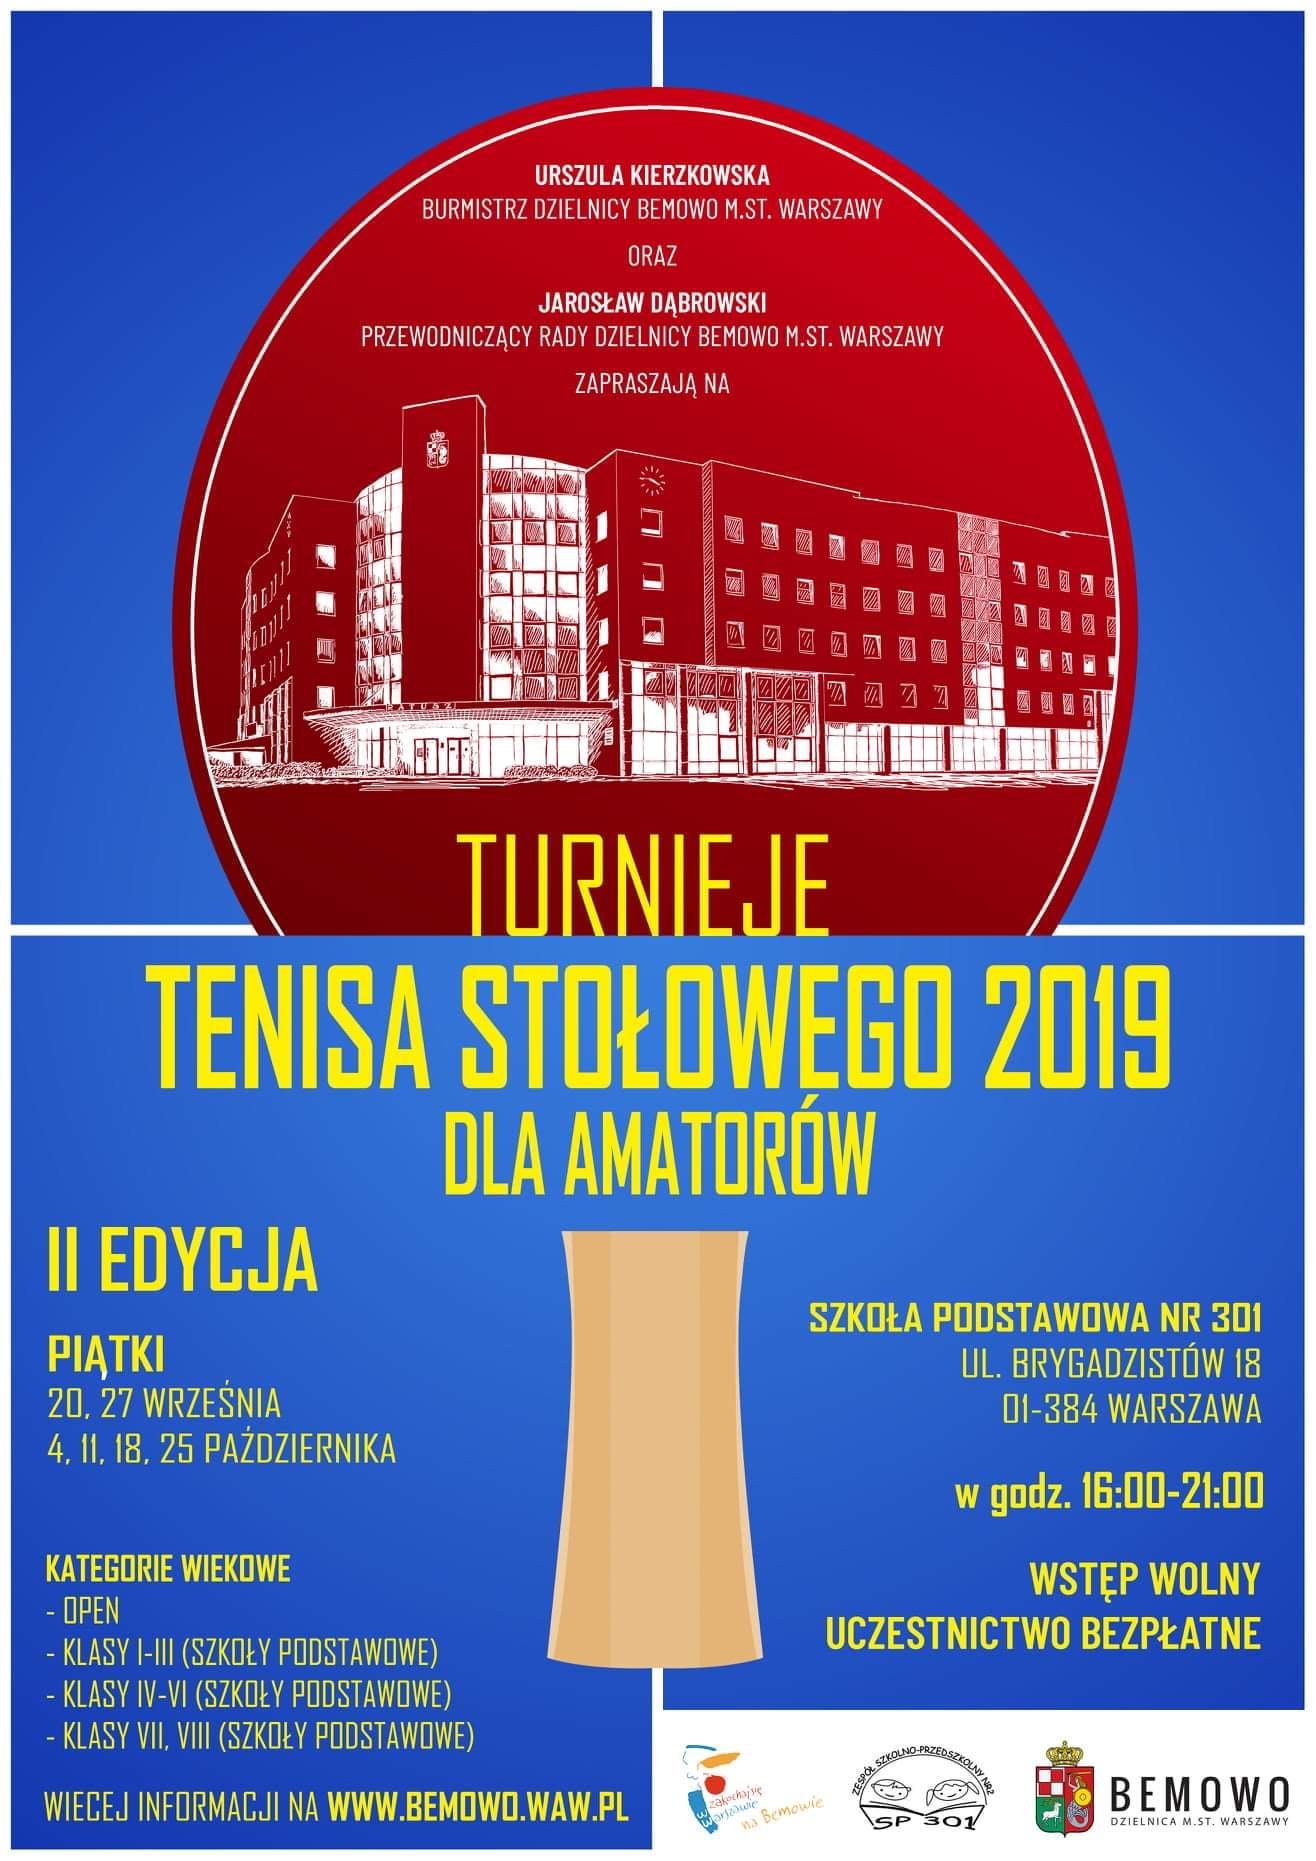 Plakat turnieju Turnieje tenisa stołowego Bemowo - Brygadzistów (8 listopada 2019) - II EDYCJA